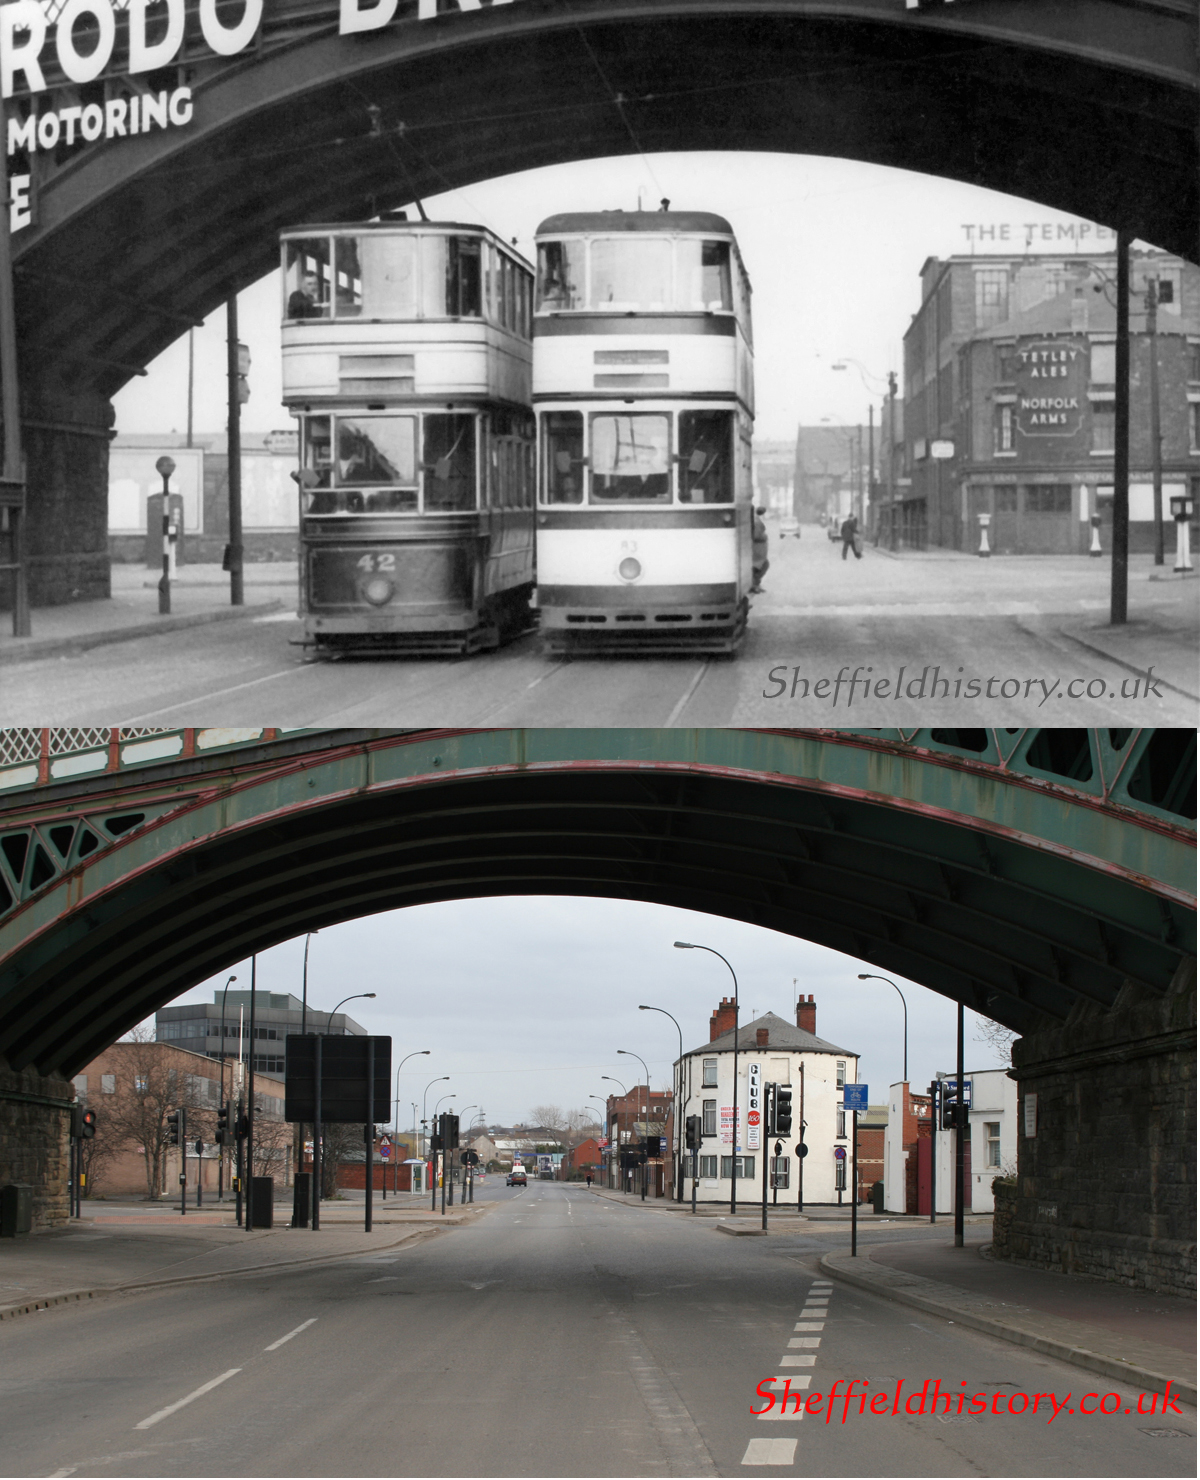 Then & Now - Sheffield Trams